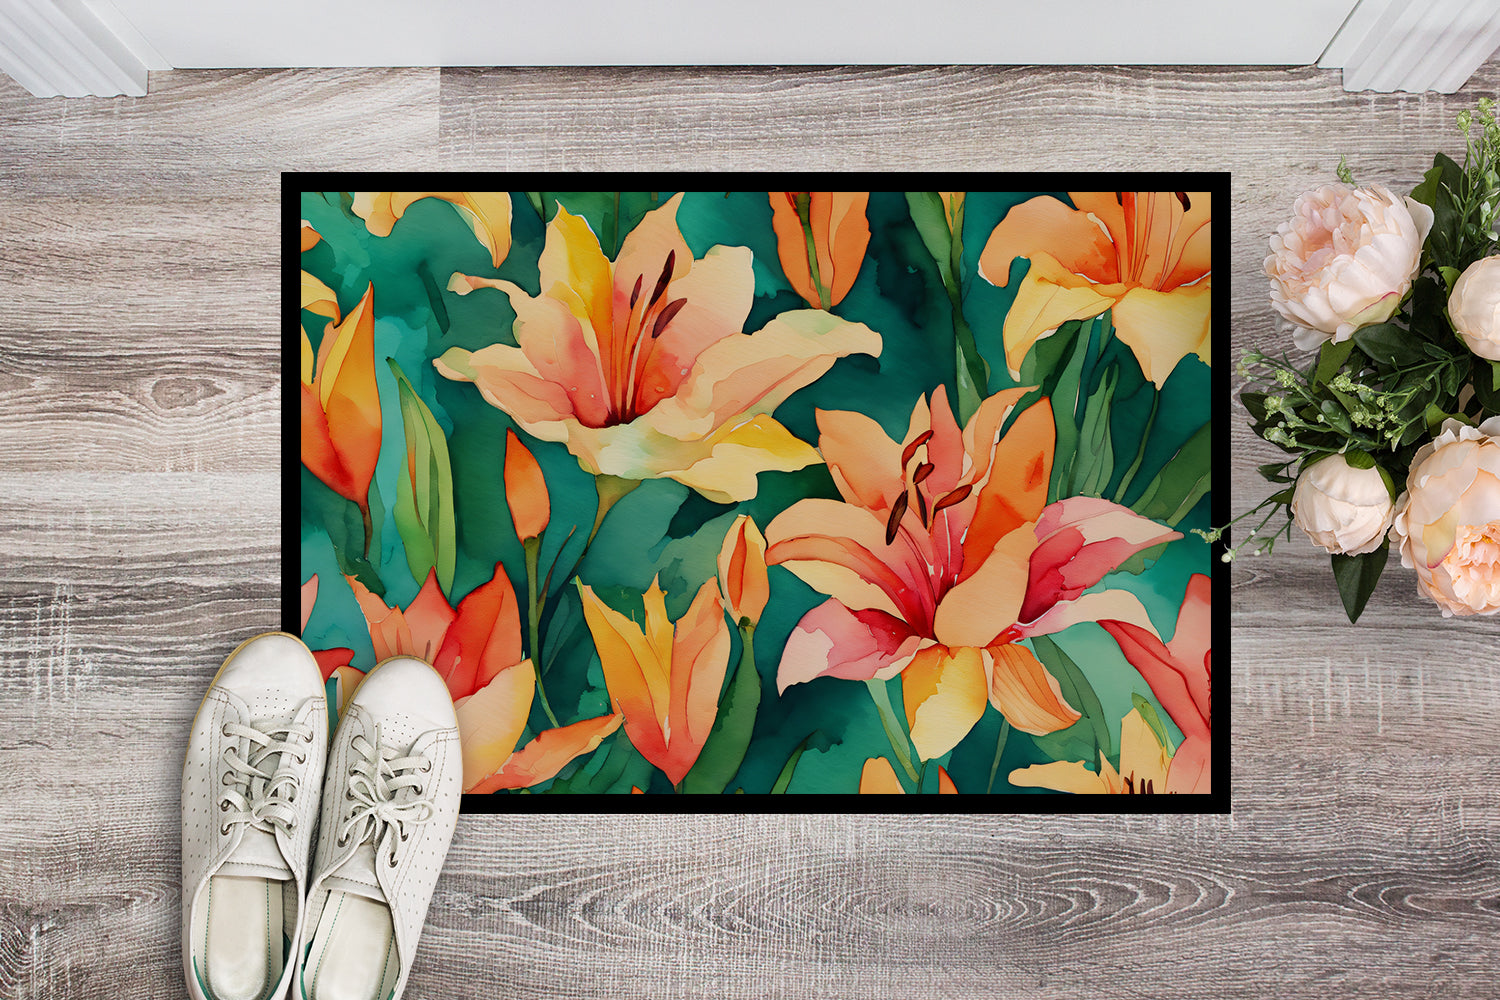 Buy this Lilies in Watercolor Indoor or Outdoor Mat 24x36